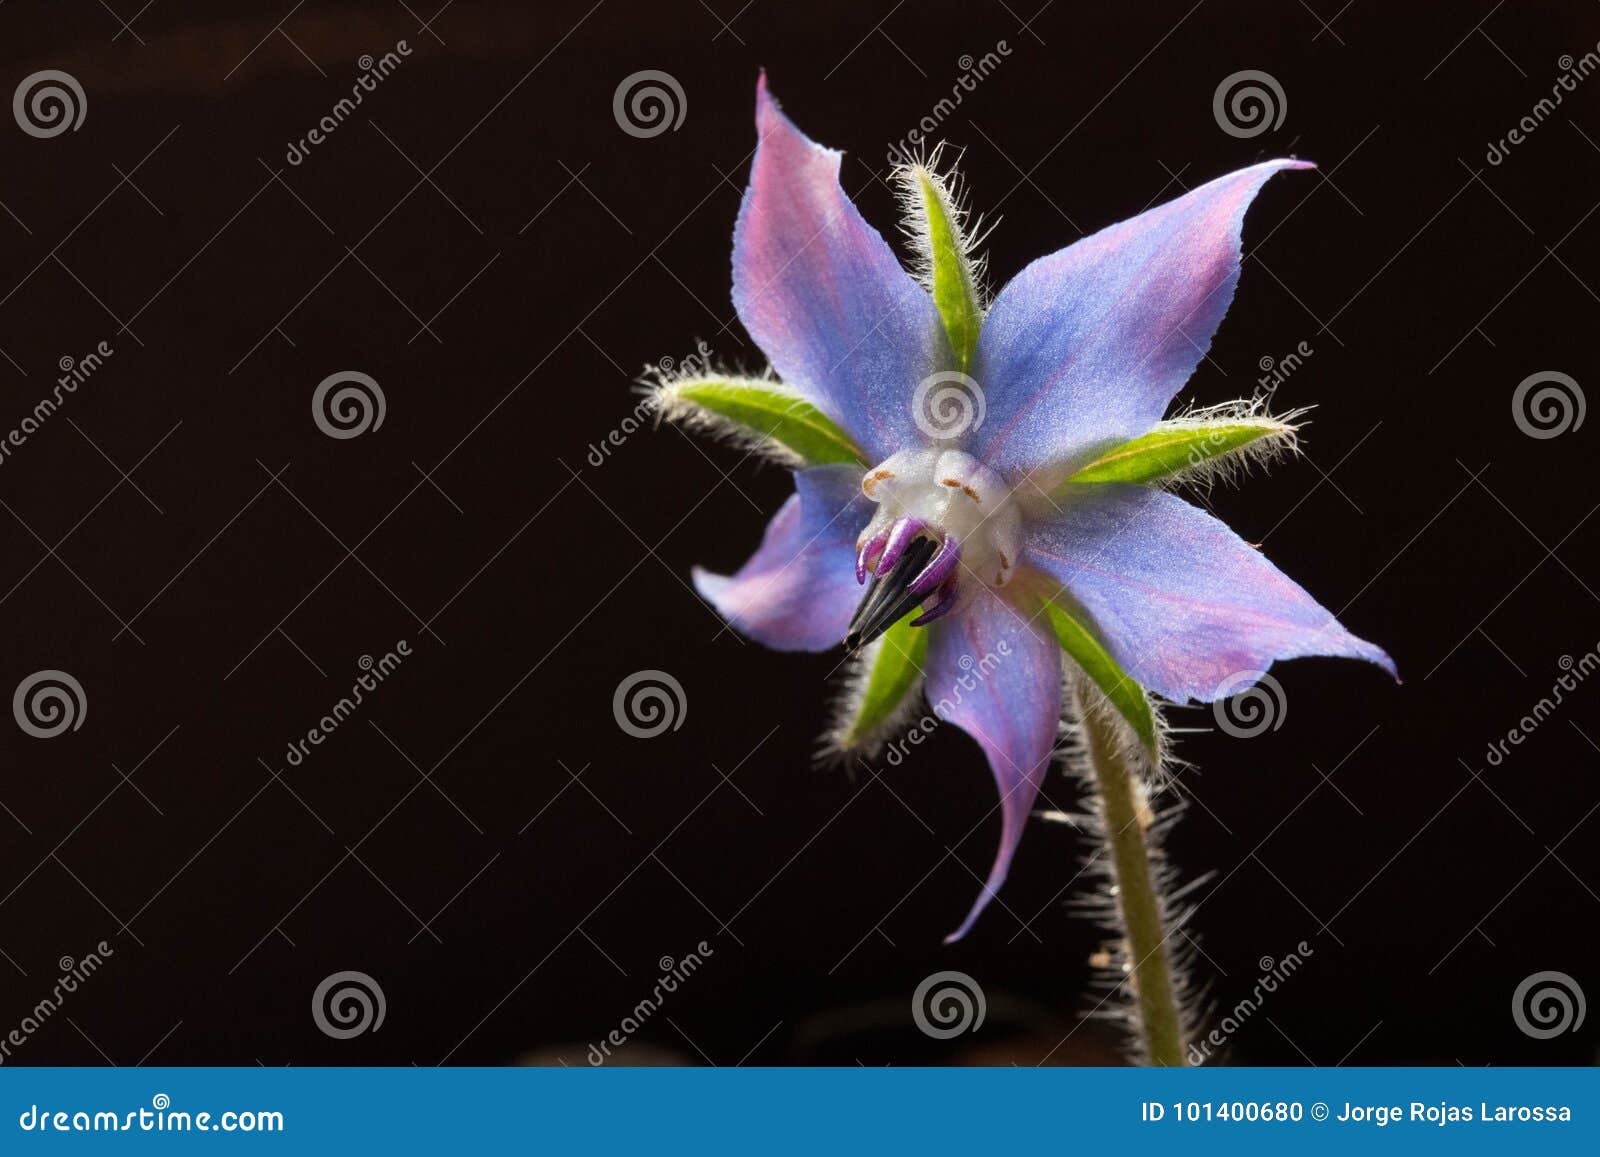 borage flower with dark background